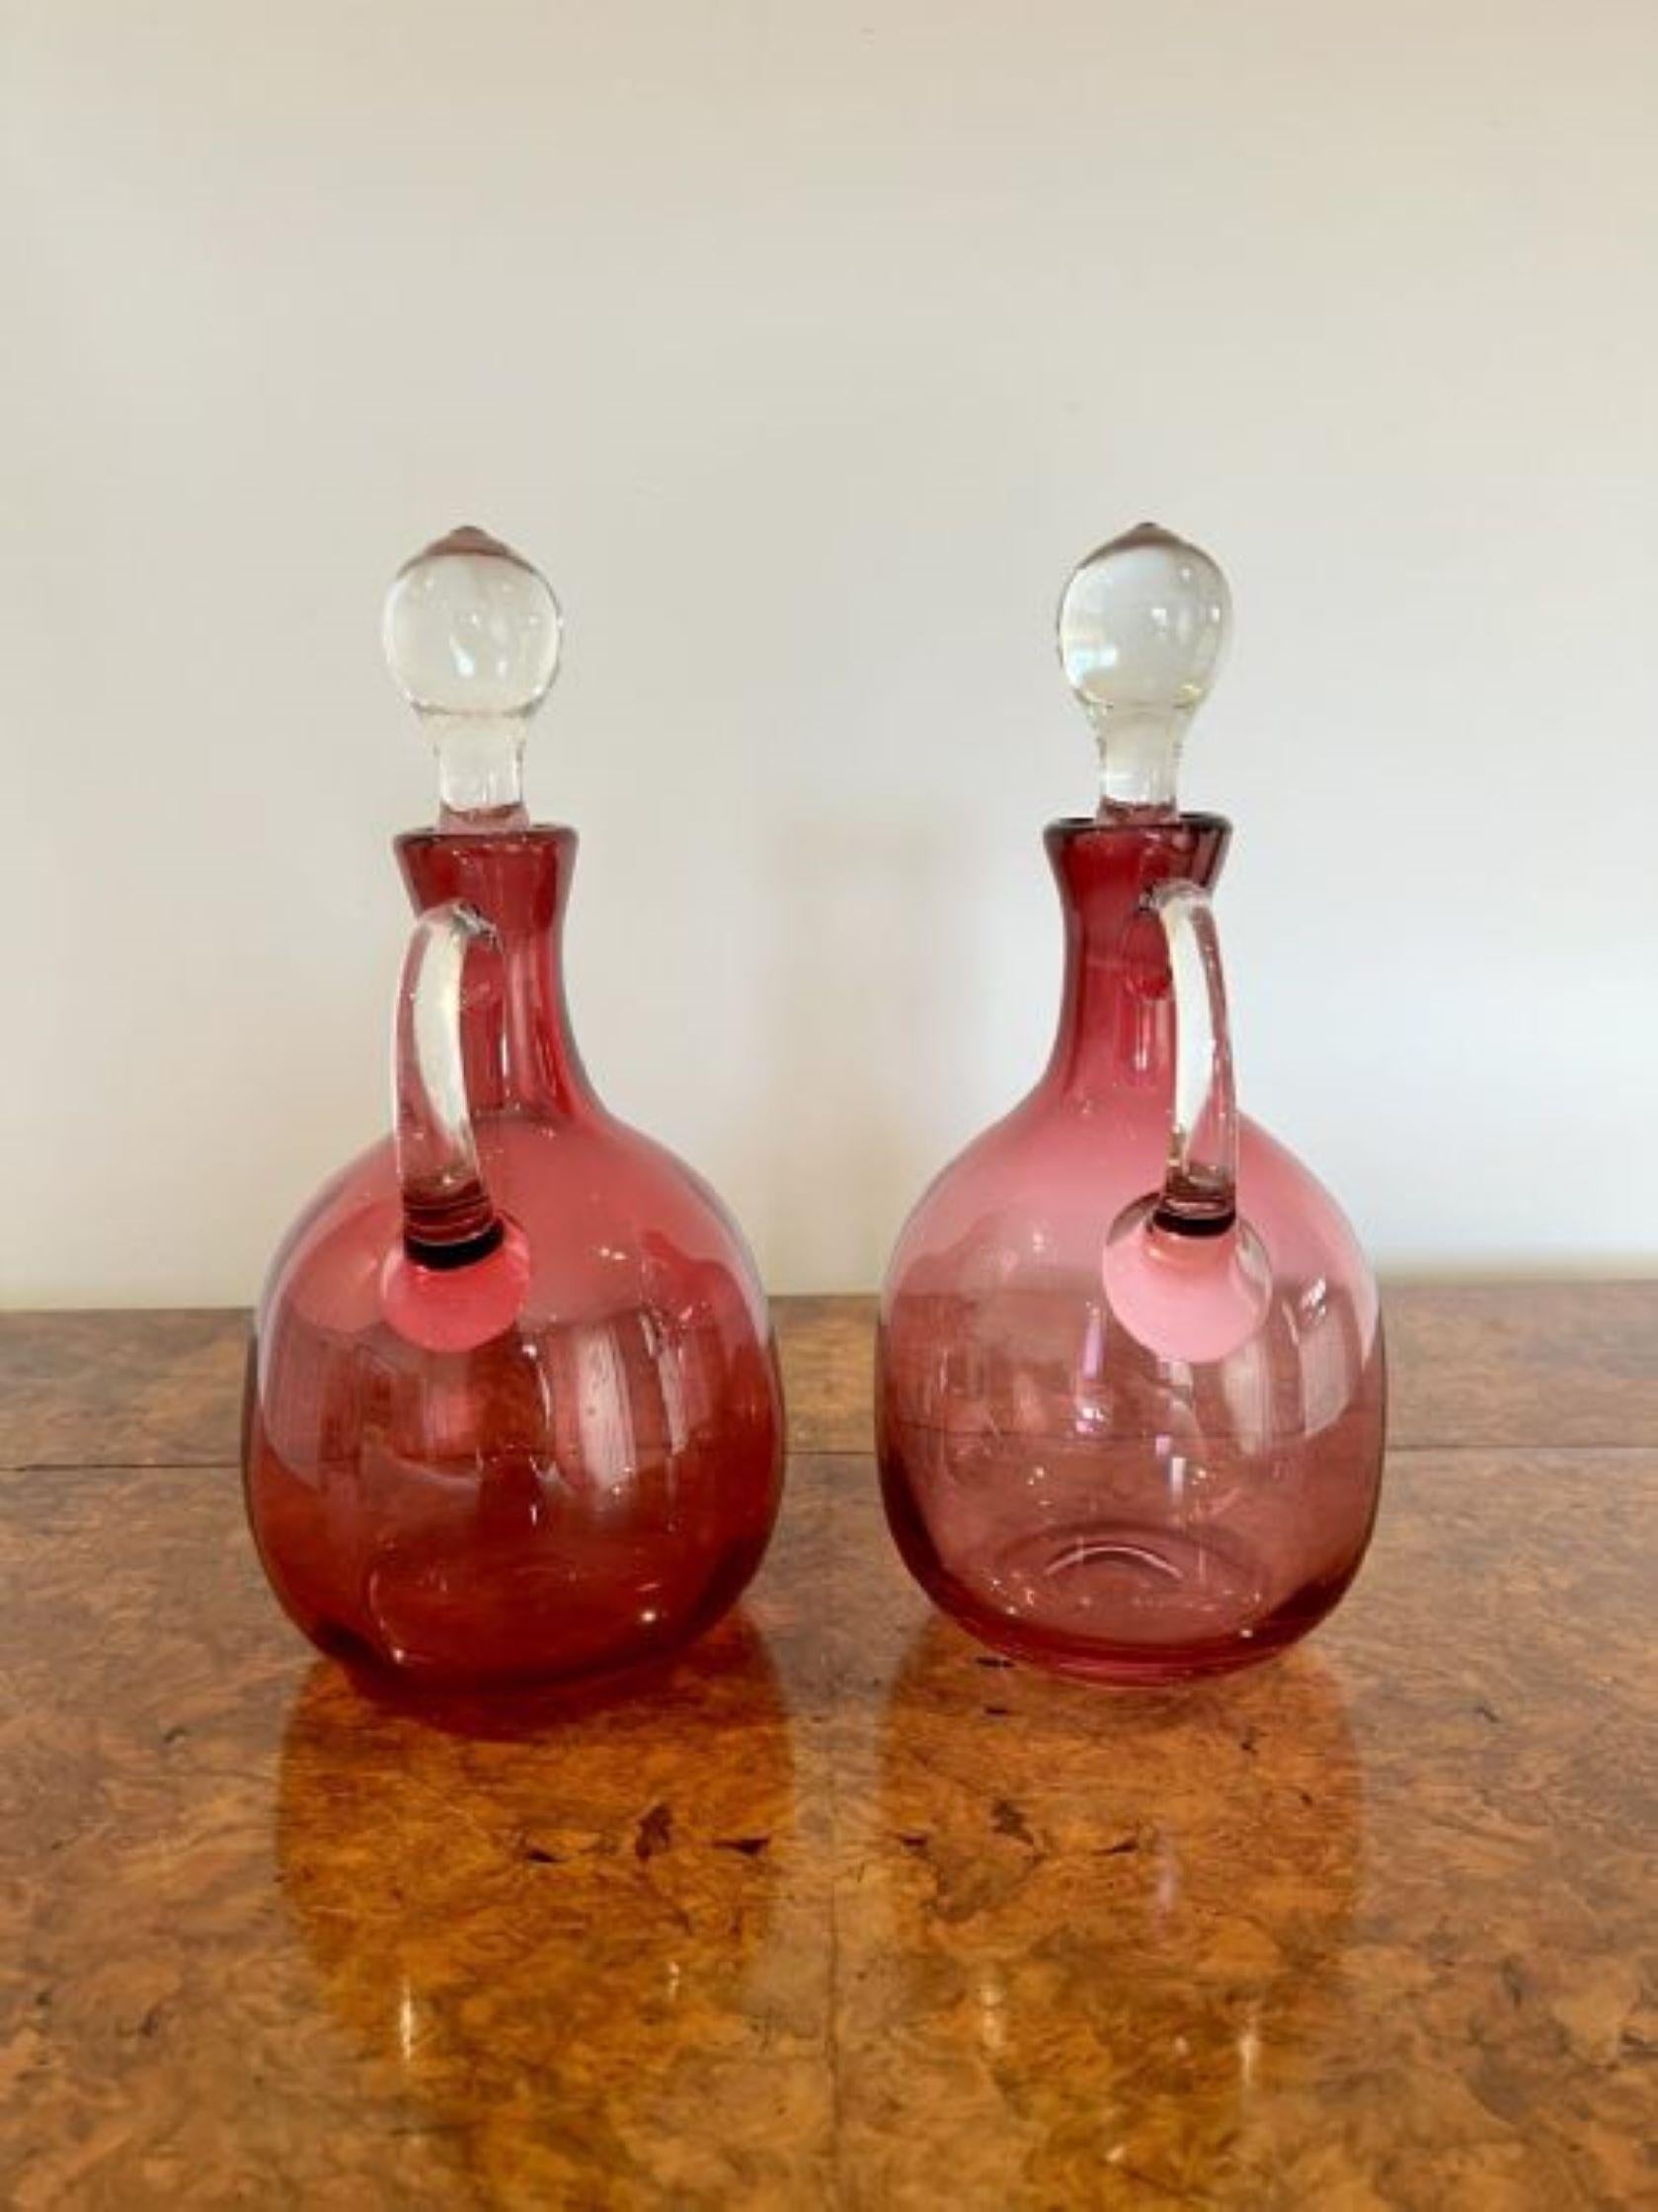 Paar hochwertige antike viktorianische Preiselbeer-Glaskaraffen mit zwölf Preiselbeer-Glas-Weingläsern mit einem hochwertigen Paar antiker viktorianischer Preiselbeer-Glaskaraffen mit einem runden Körper und einem geformten transparenten Glasgriff